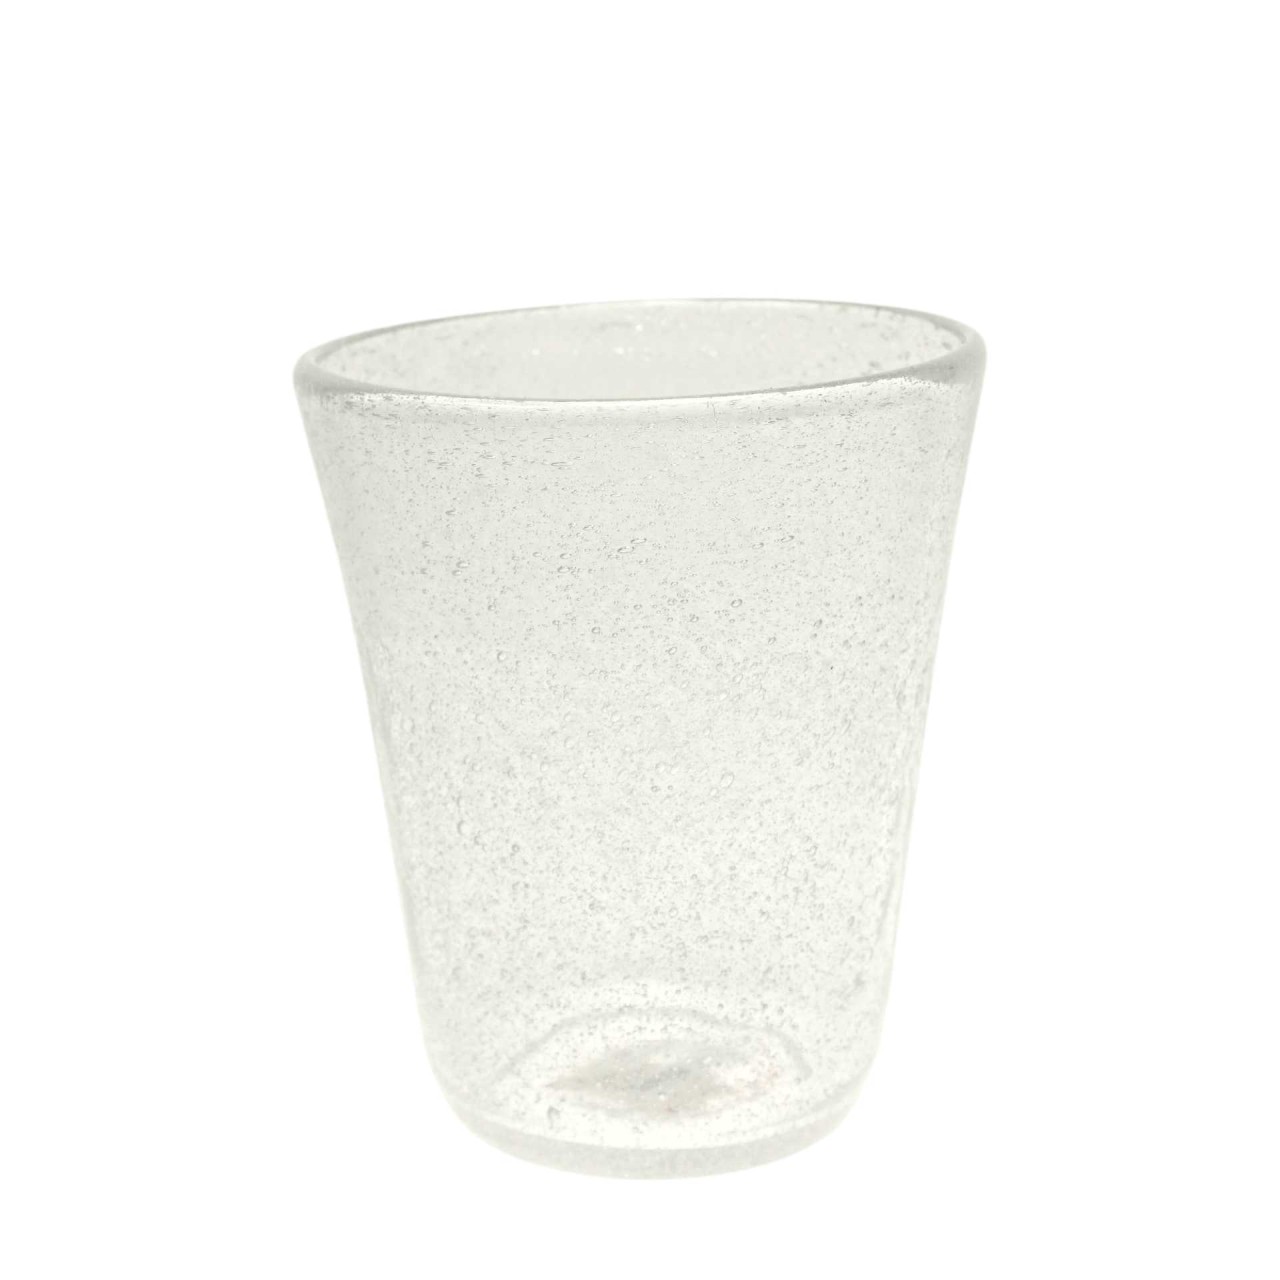 Trinkglas weiss transparent mundgeblasen 300ml